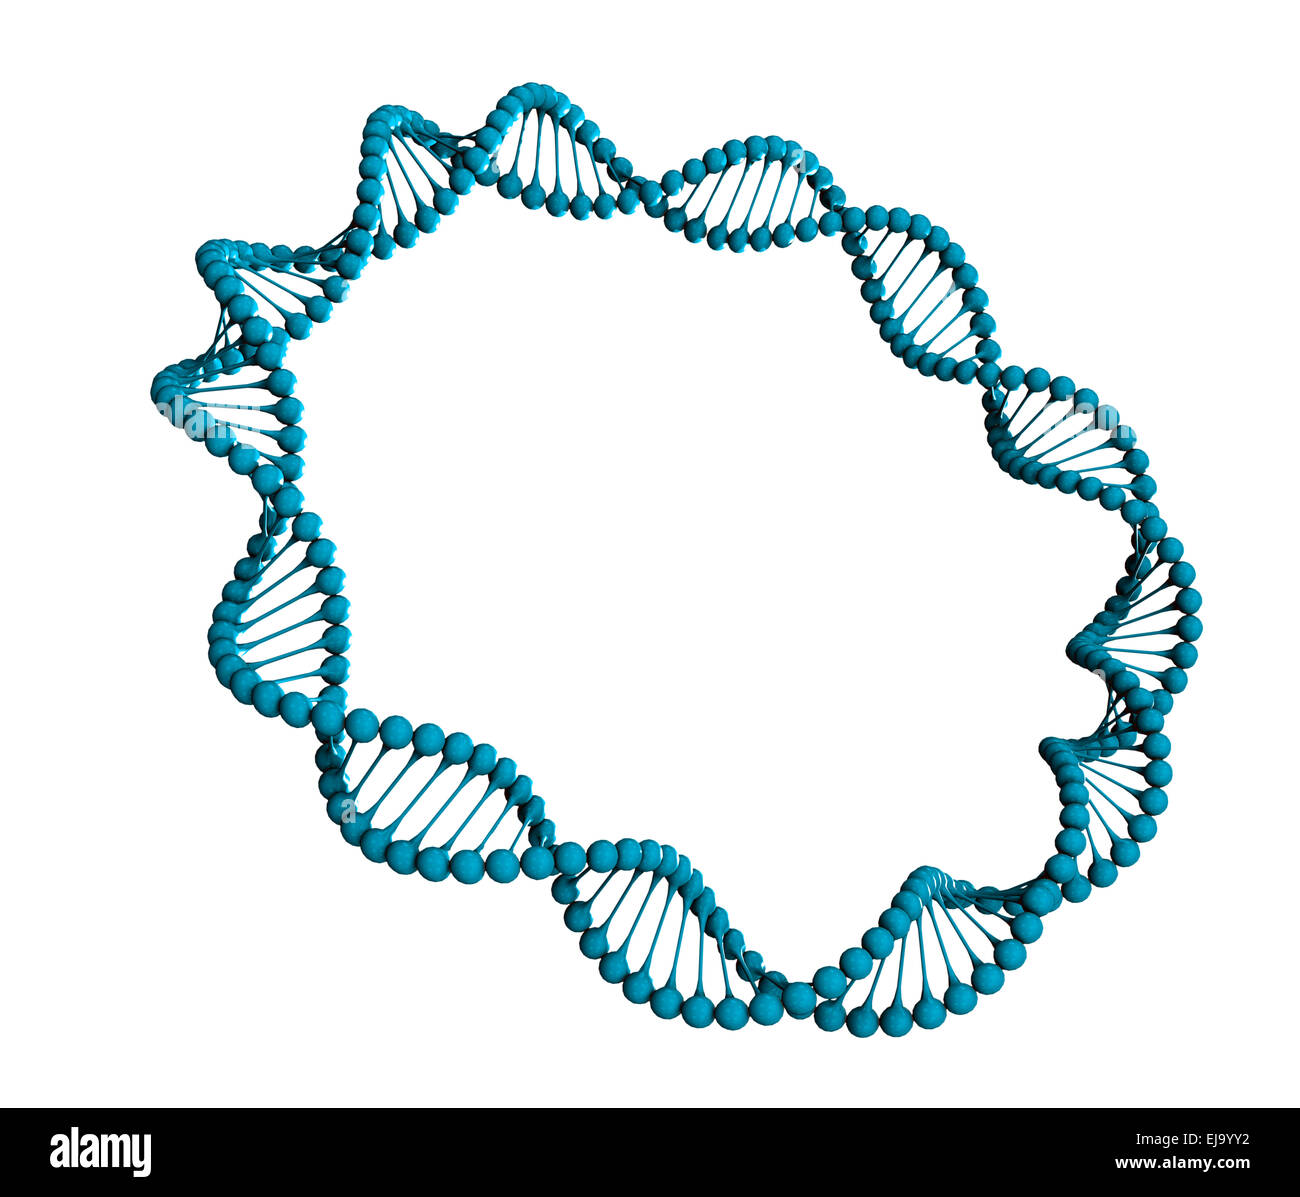 L'anneau d'ADN génétique illustration stylisée Banque D'Images